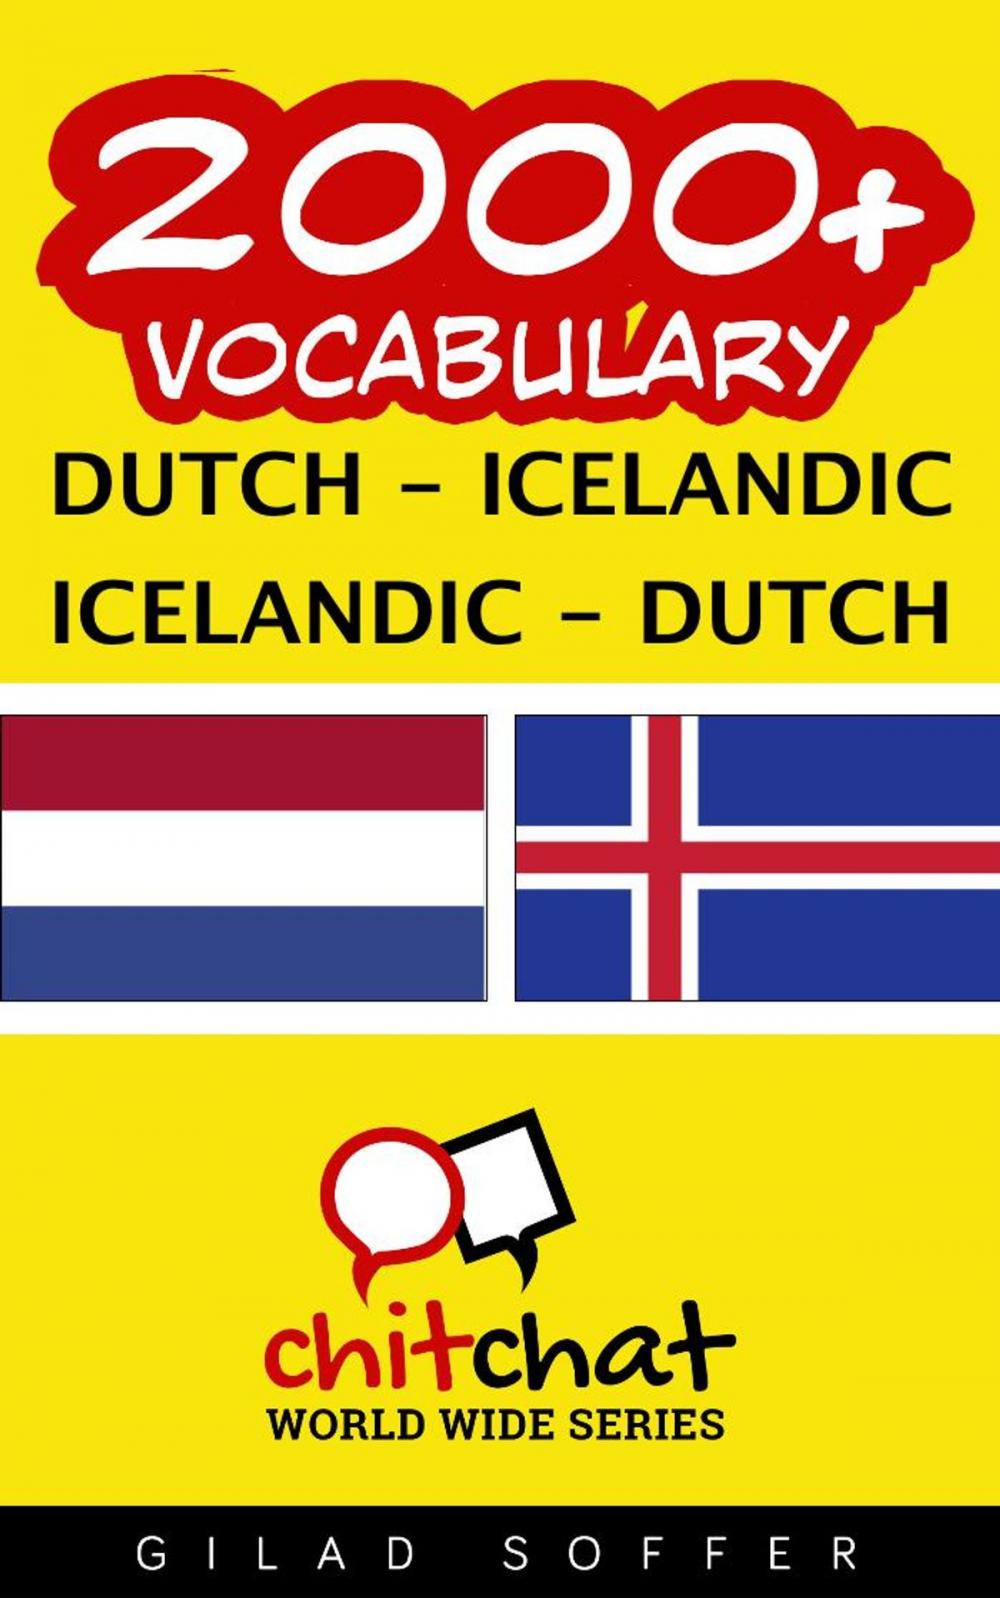 Big bigCover of 2000+ Vocabulary Dutch - Icelandic